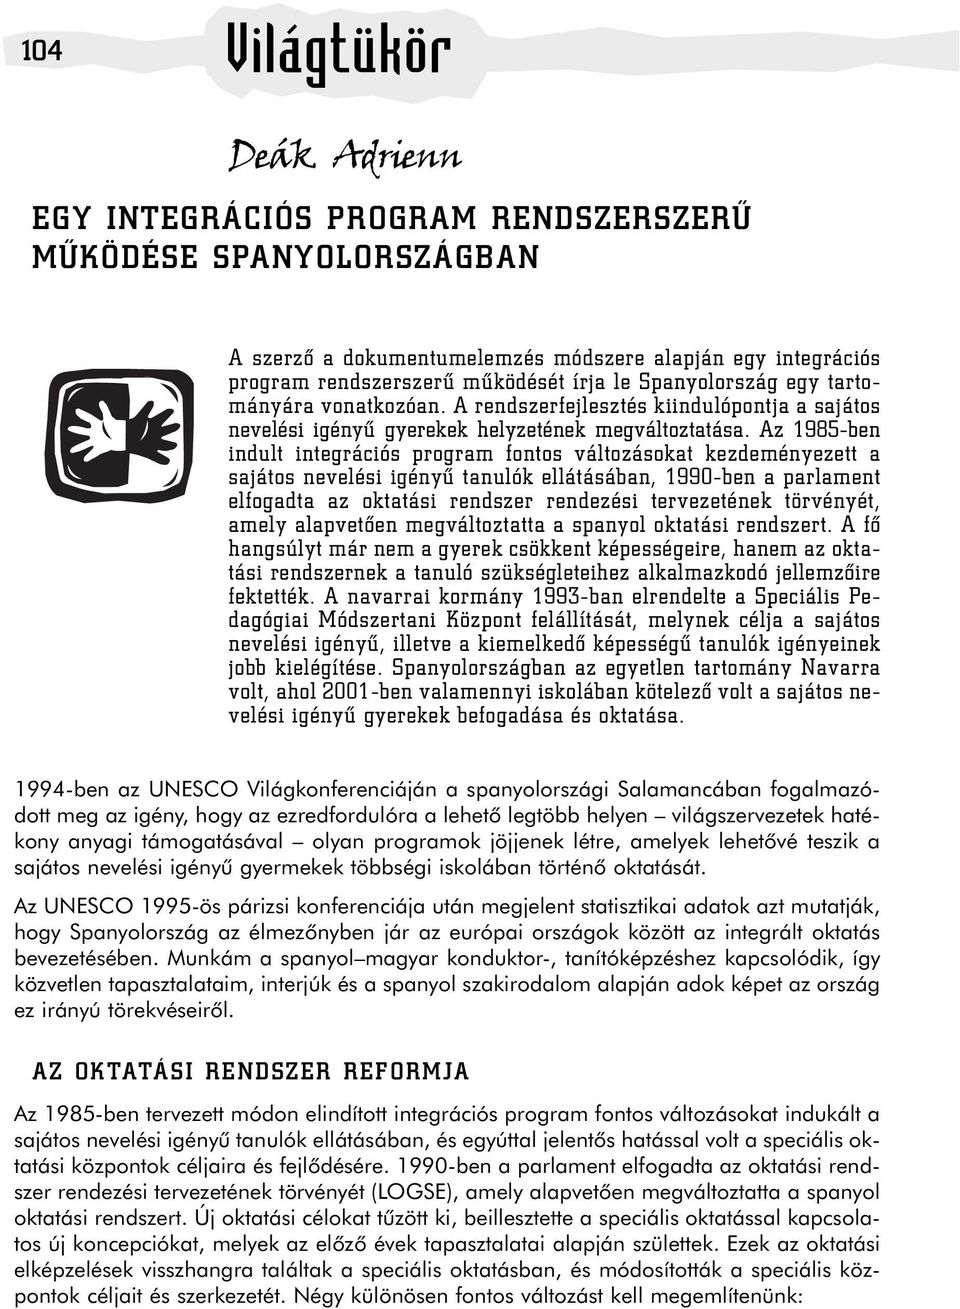 Az 1985-ben indult integrációs program fontos változásokat kezdeményezett a sajátos nevelési igényû tanulók ellátásában, 1990-ben a parlament elfogadta az oktatási rendszer rendezési tervezetének